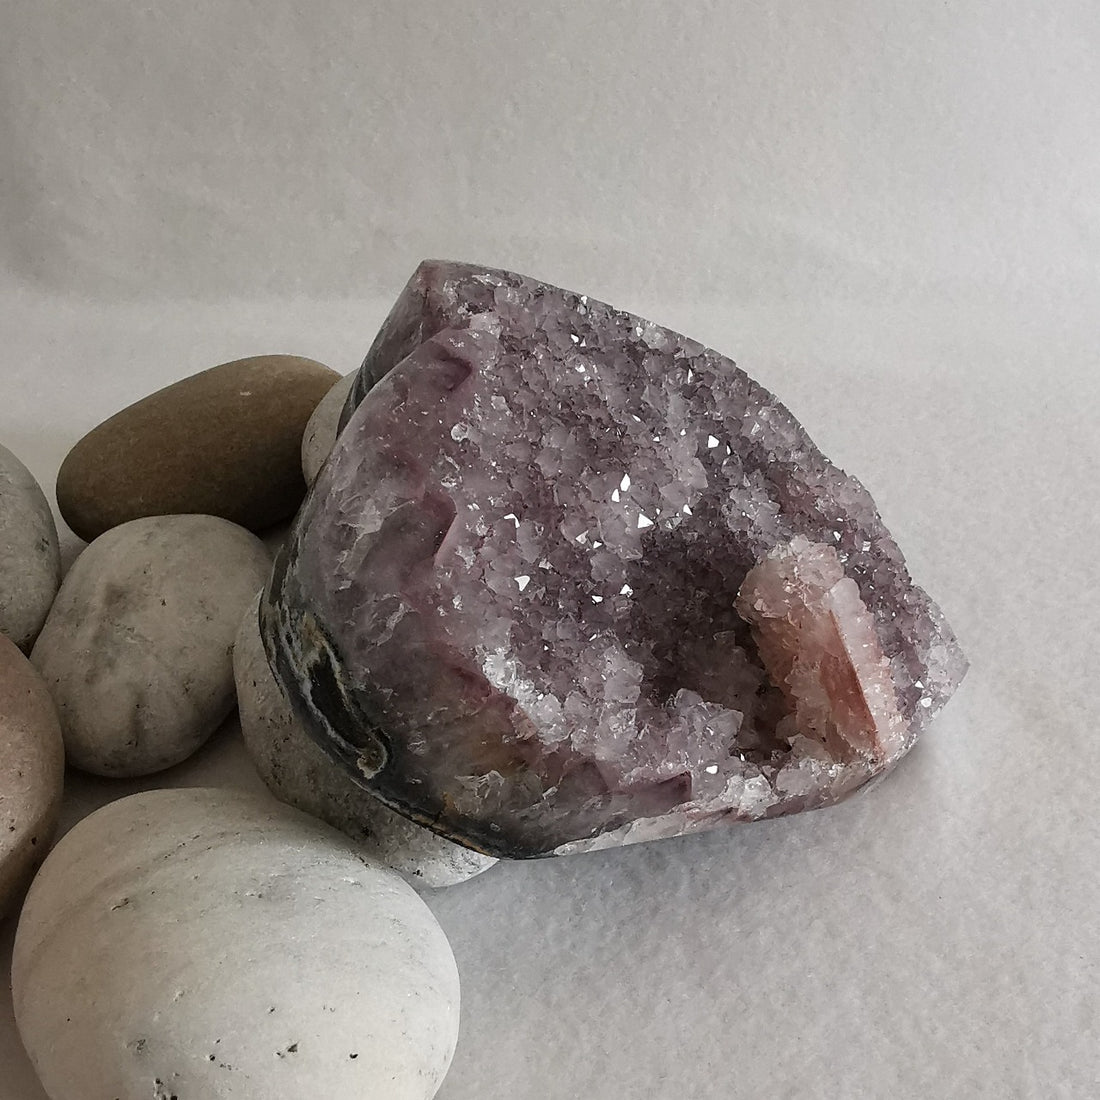 Lavender Amethyst Crystal Heart - Lavender amethyst krystallhjerte